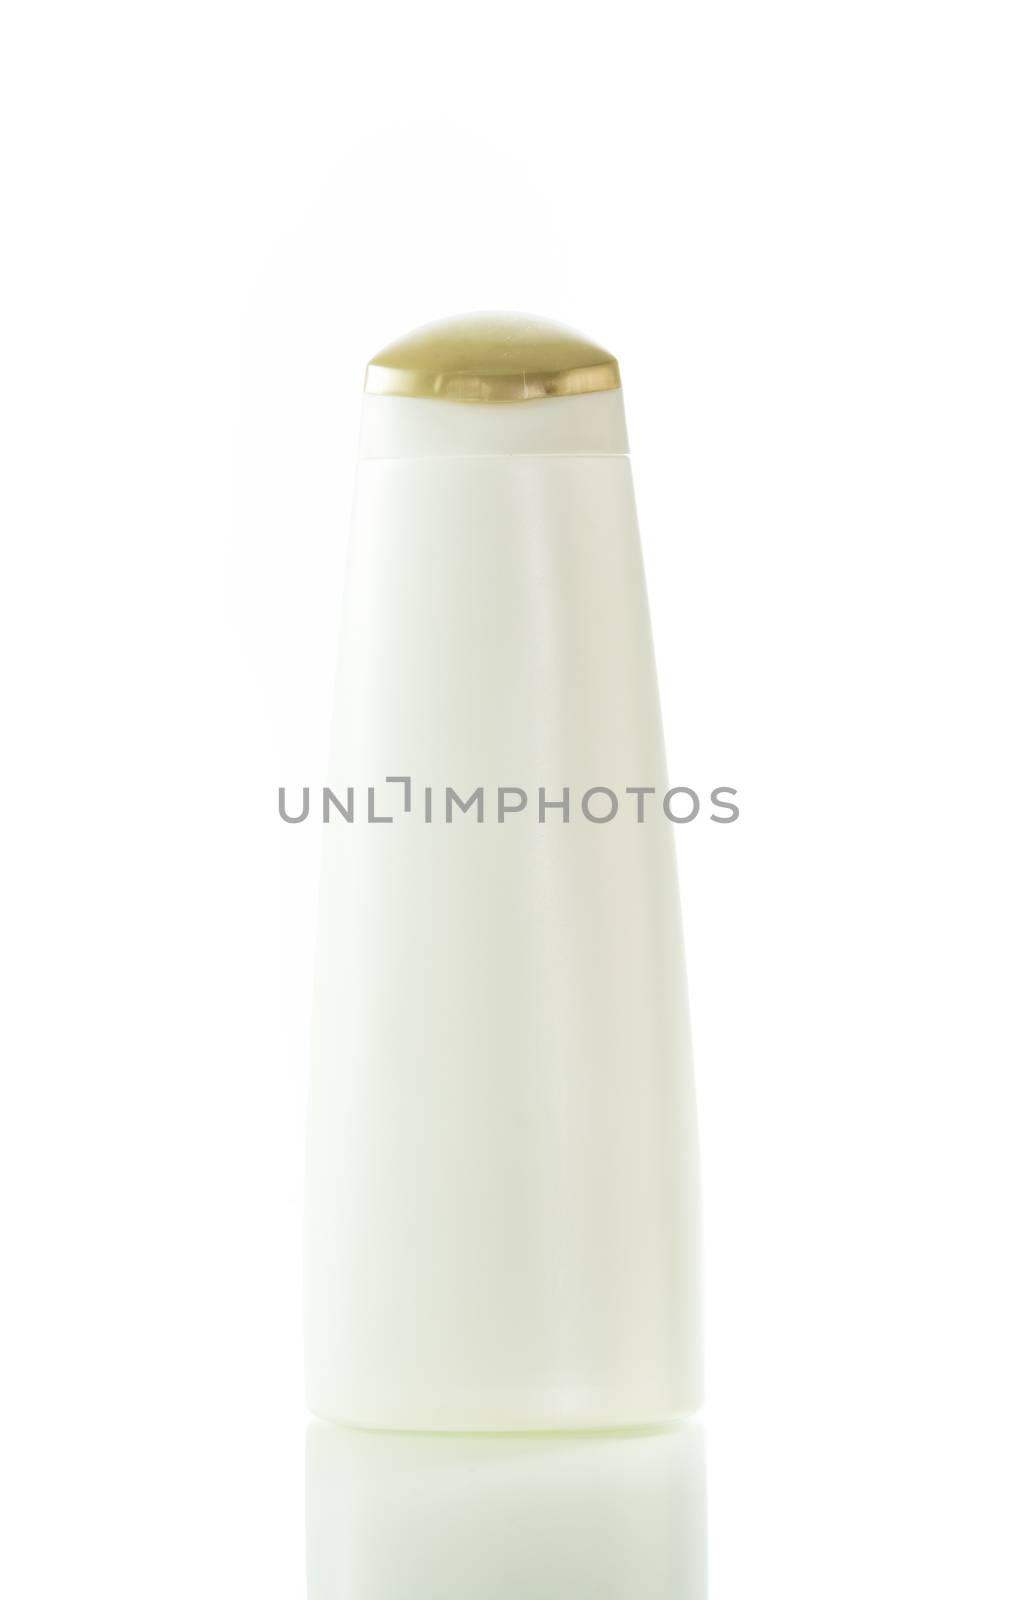 Shampoo, gel or lotion white plastic bottle by Sorapop